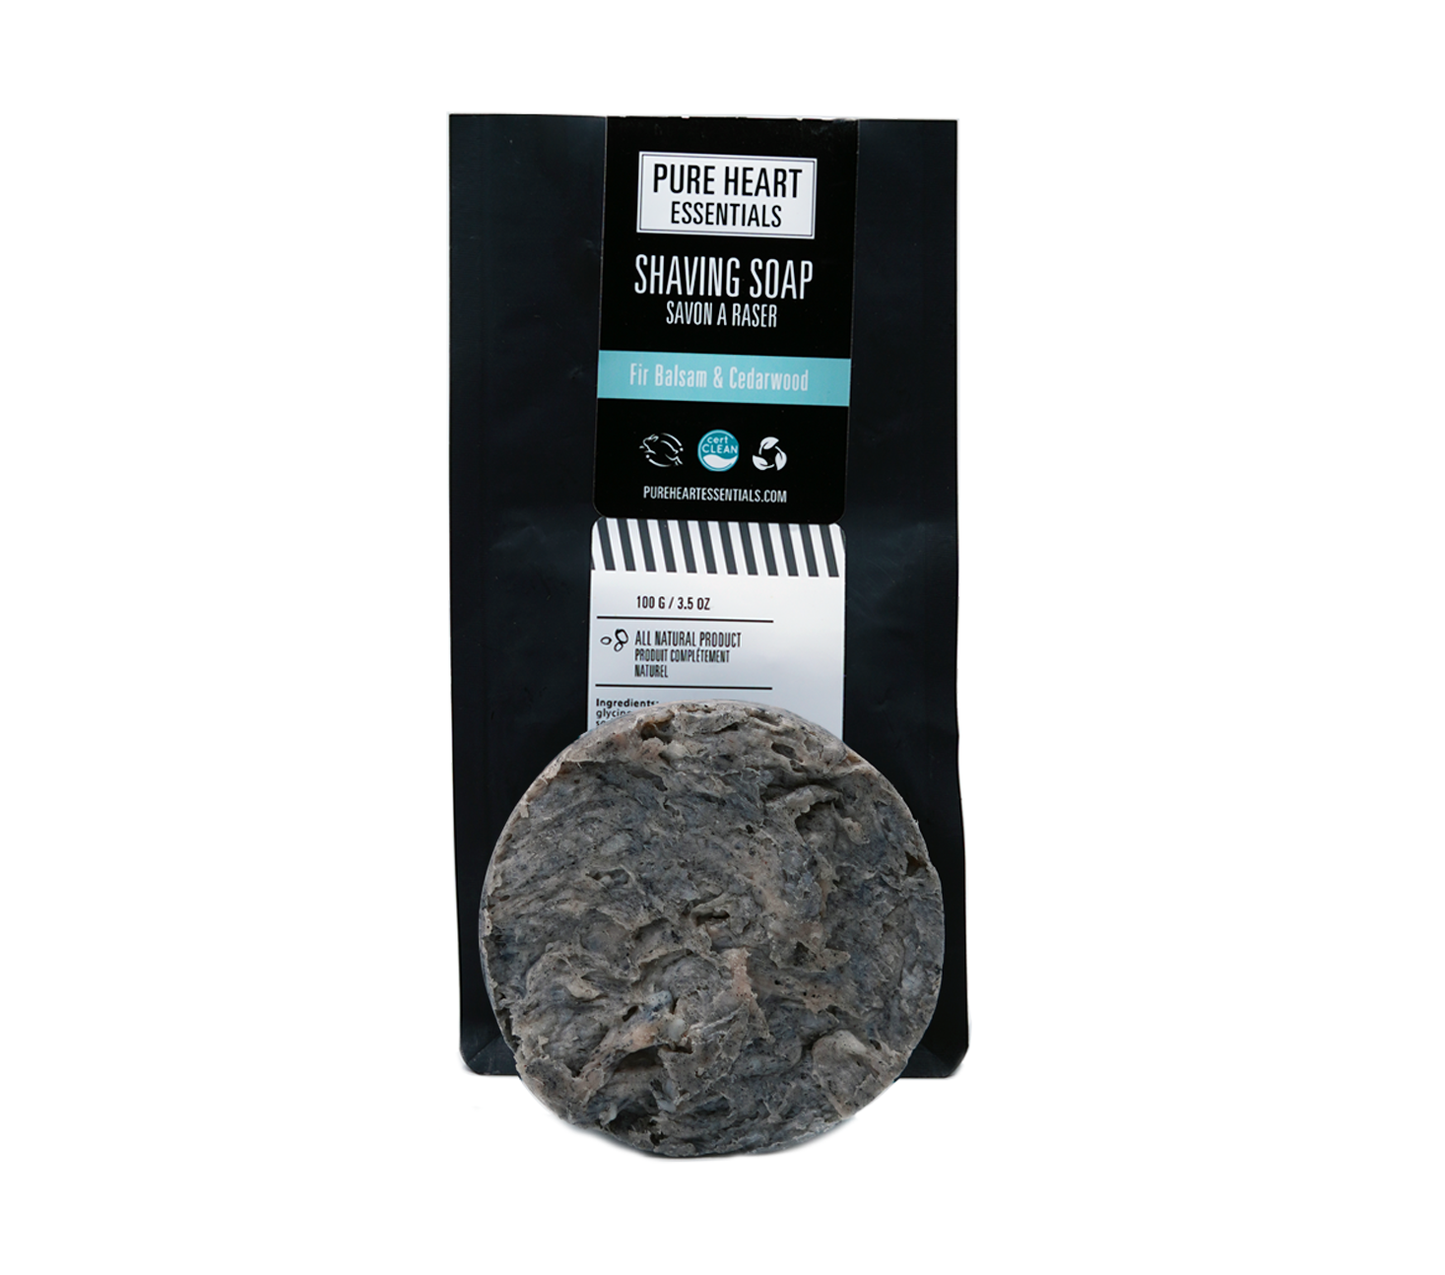 Pure Heart Essentials | Shaving Bar - Fir Balsam & Cedarwood w/ packaging